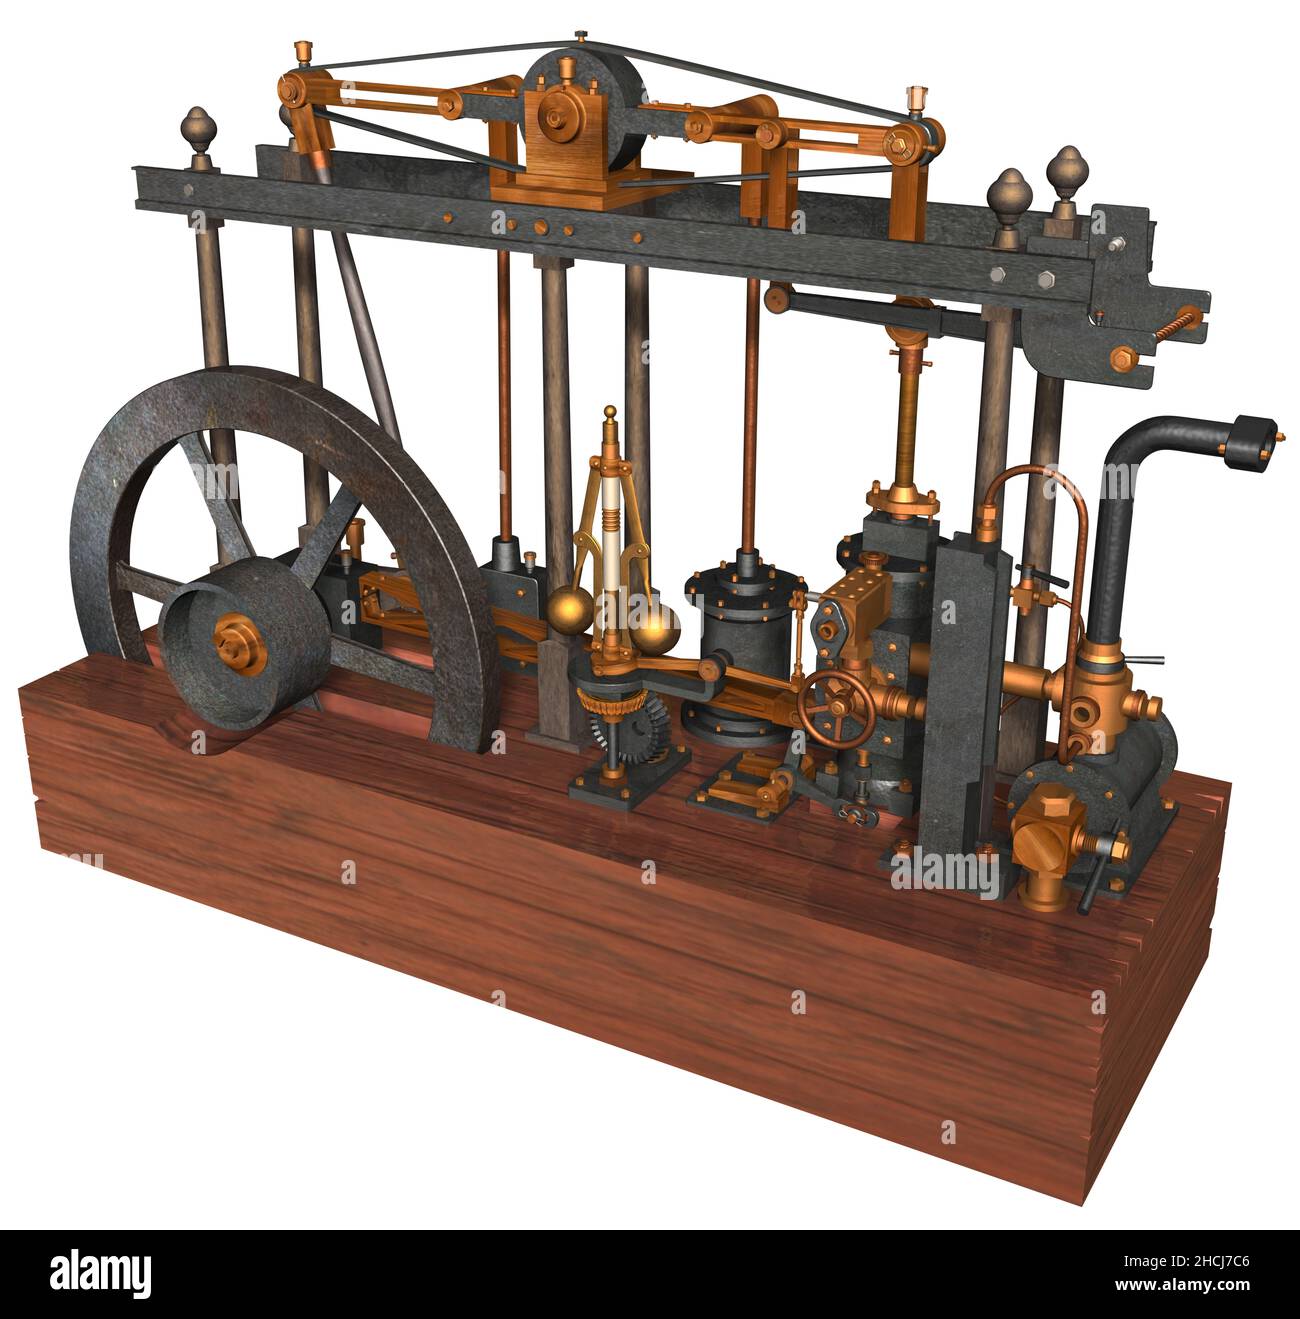 3D rendu Illustration d'un moteur à vapeur conçu, construit et perfectionné par l'inventeur écossais James Watt breveté en 1769. Banque D'Images